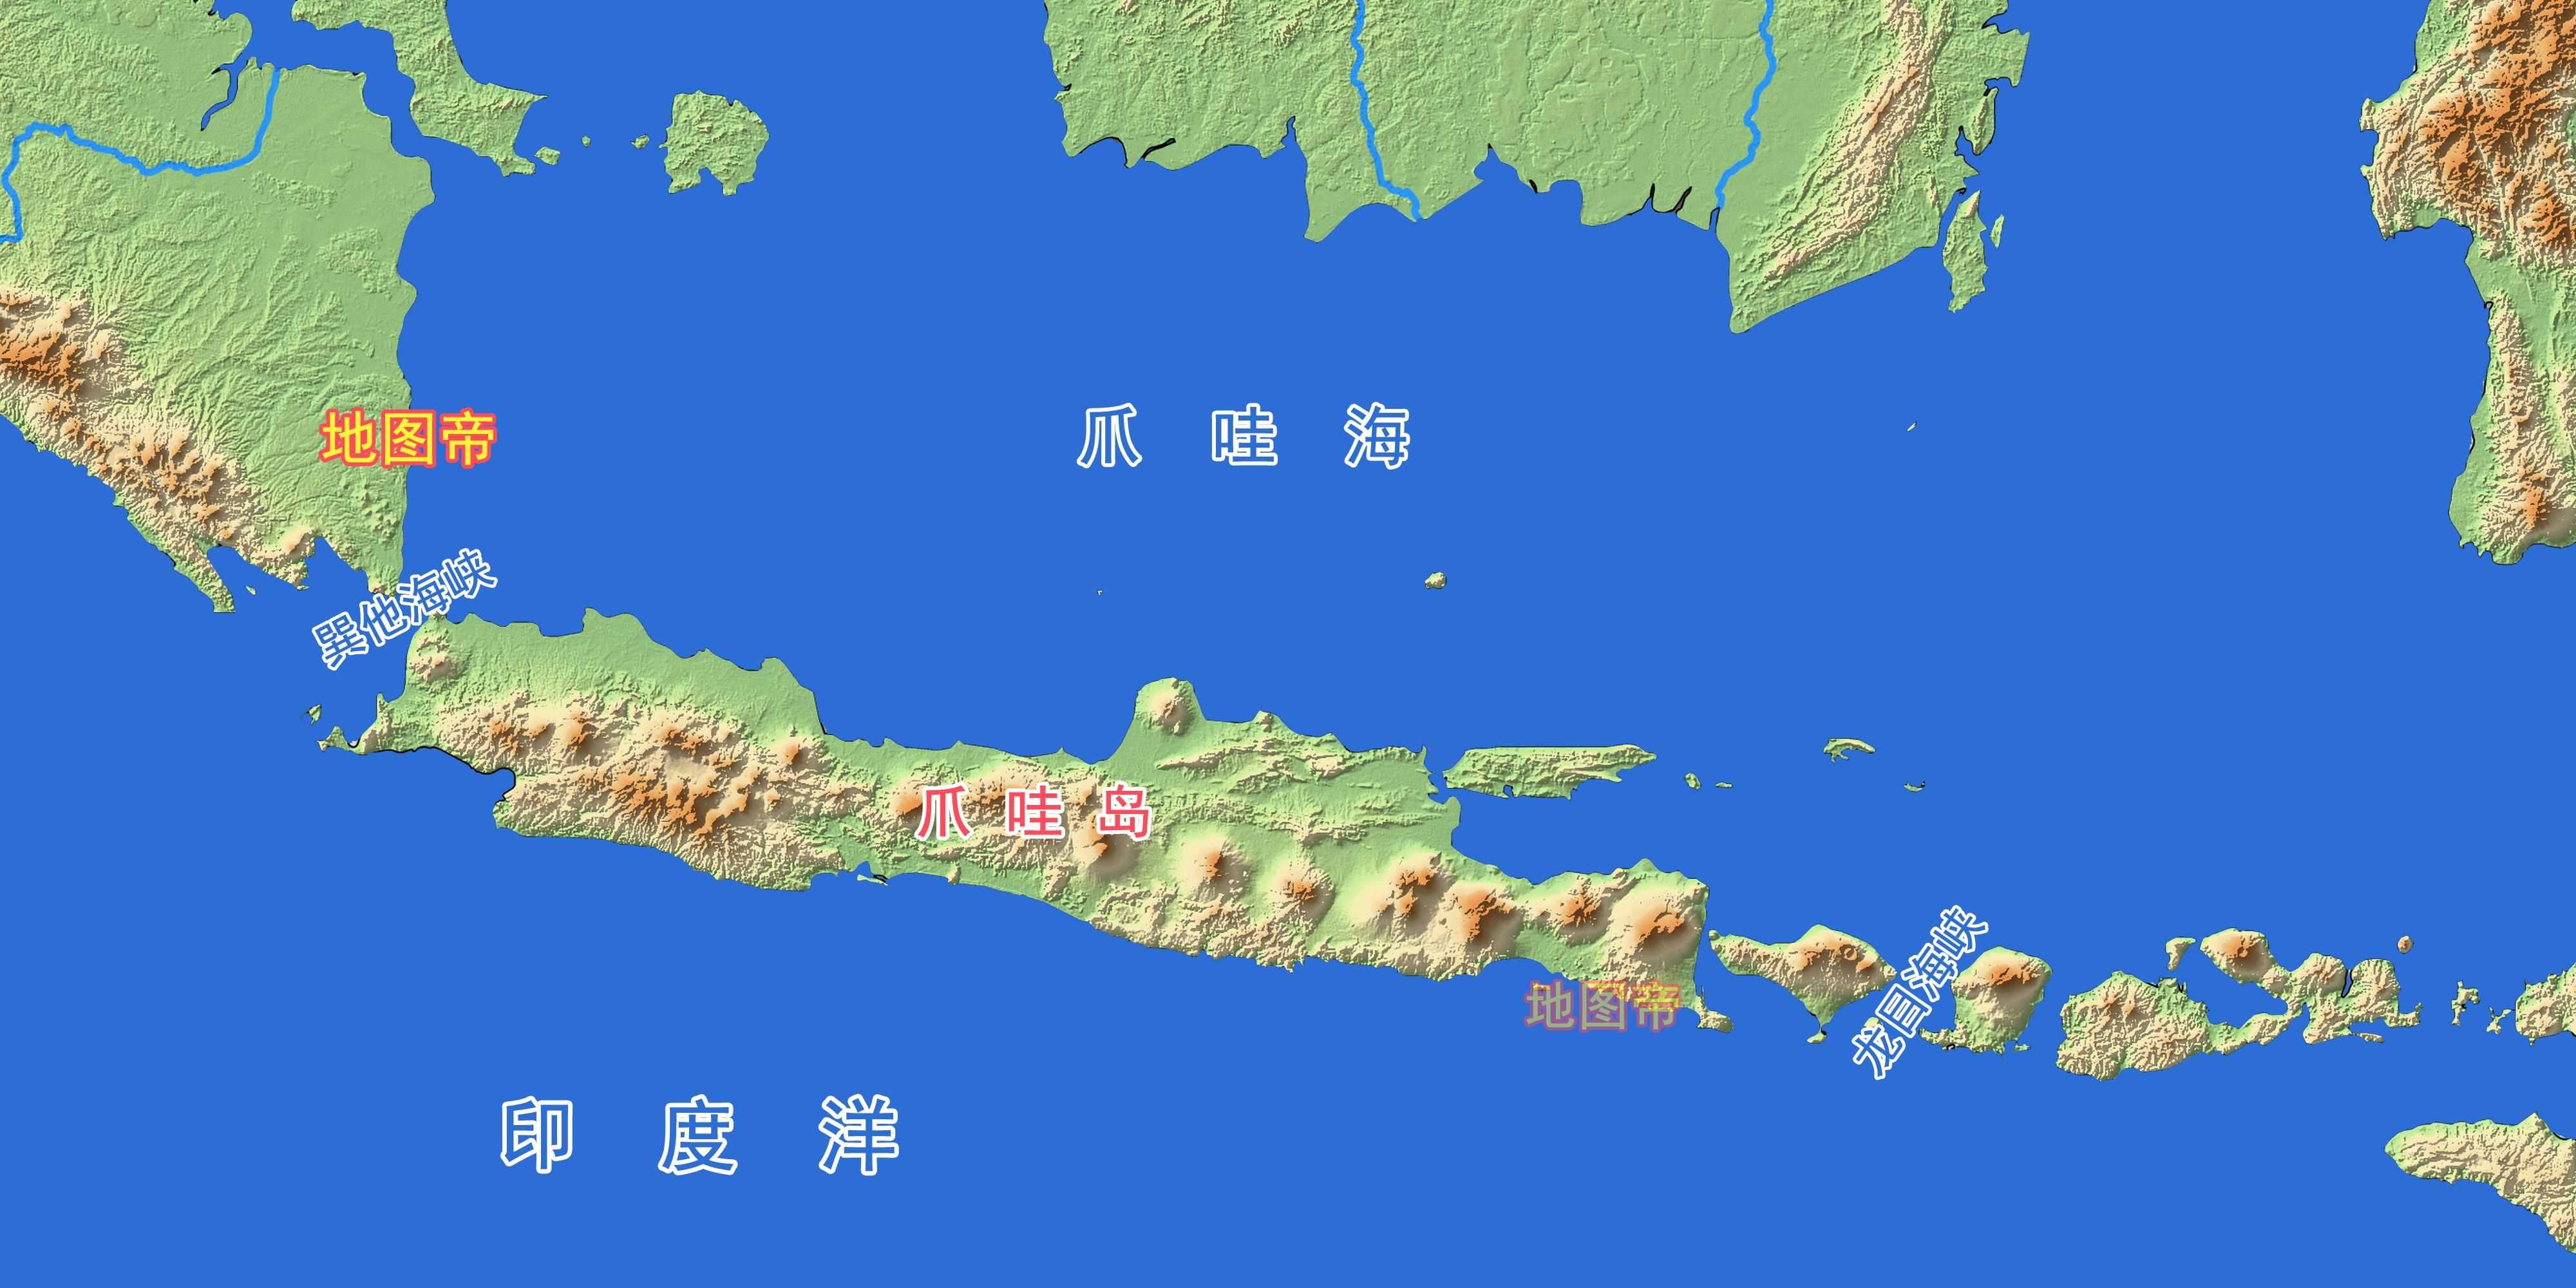 印度尼西亚地图中英文对照版全图 - 中英世界地图 - 地理教师网